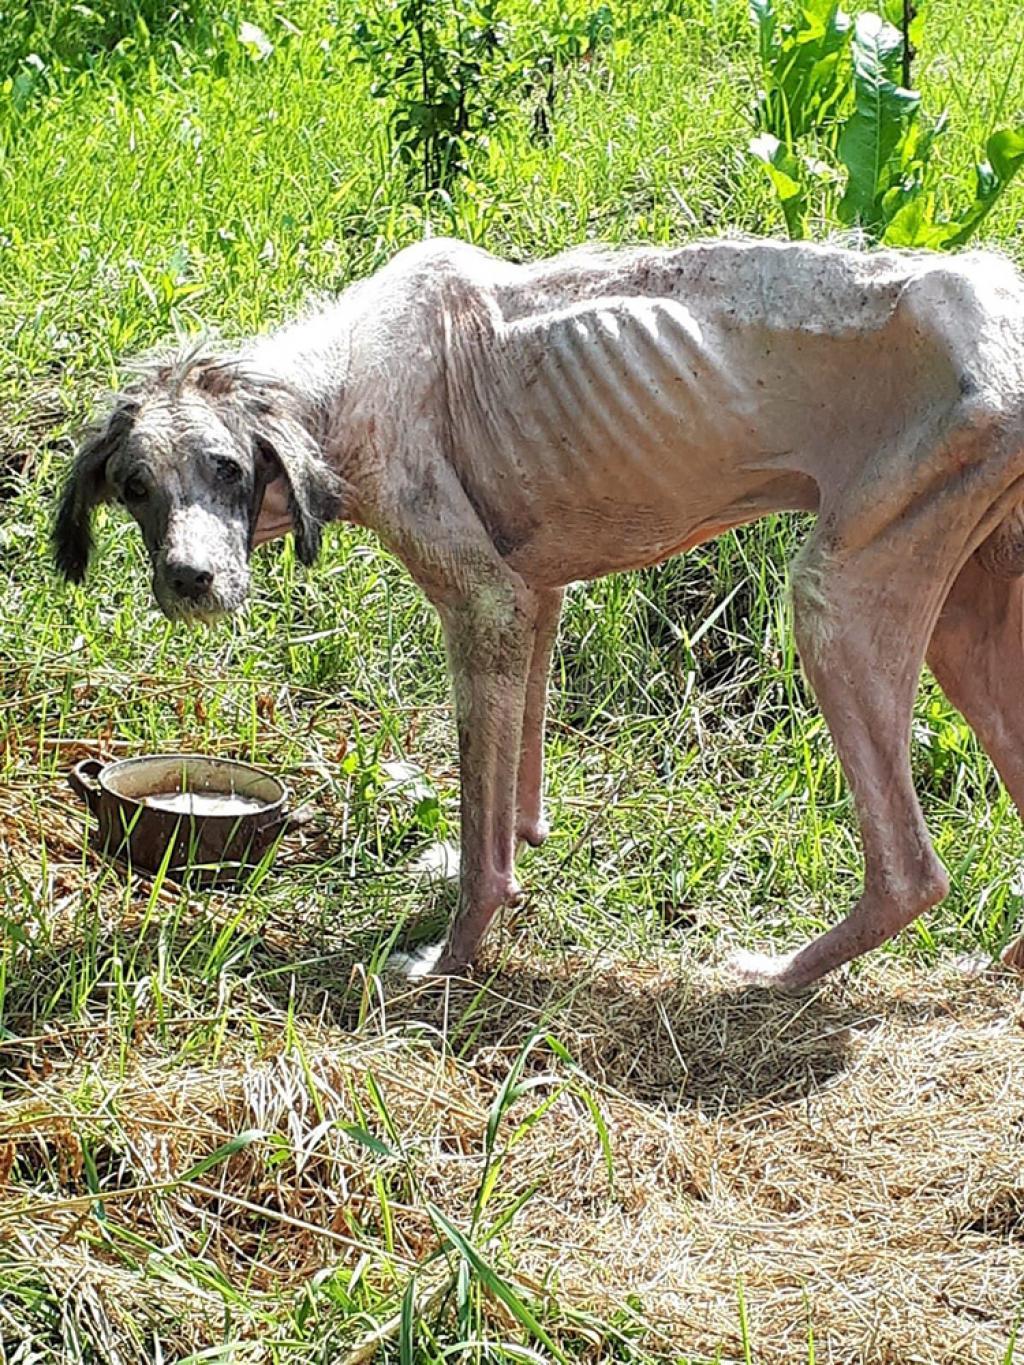 Imagini cutremuratoare cu un caine care a ajuns piele si os dupa ce nu a mai fost hranit